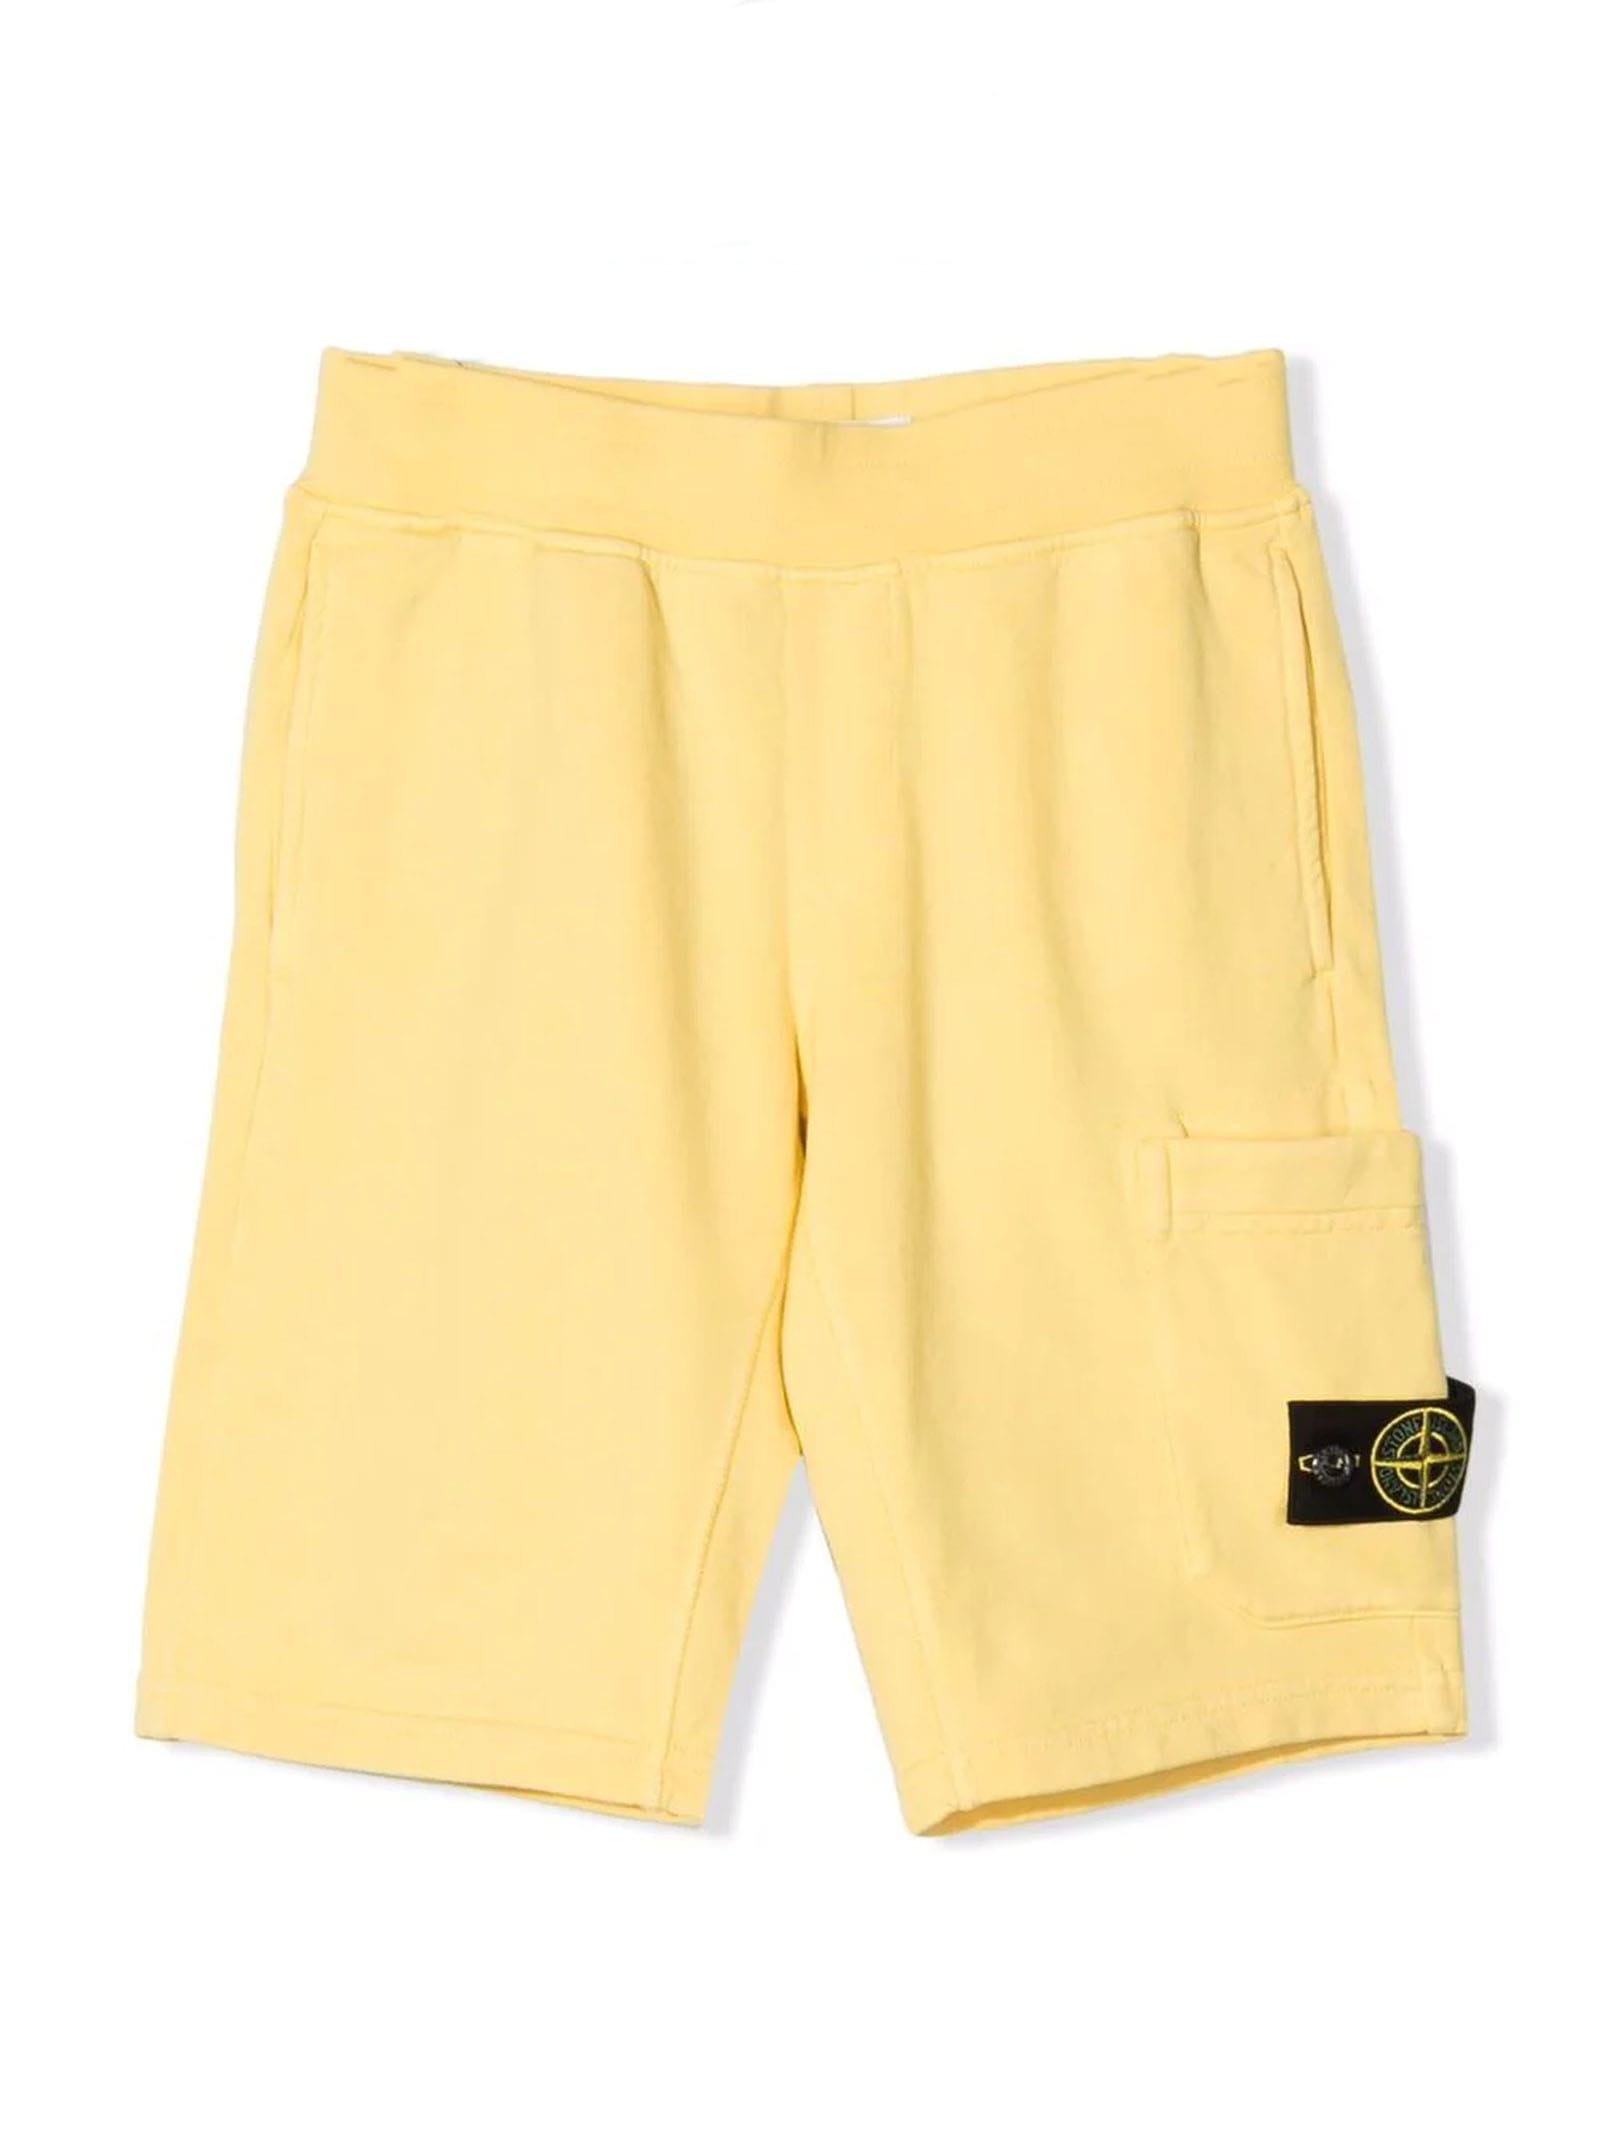 Stone Island Kids' Yellow Cotton Shorts In Giallo